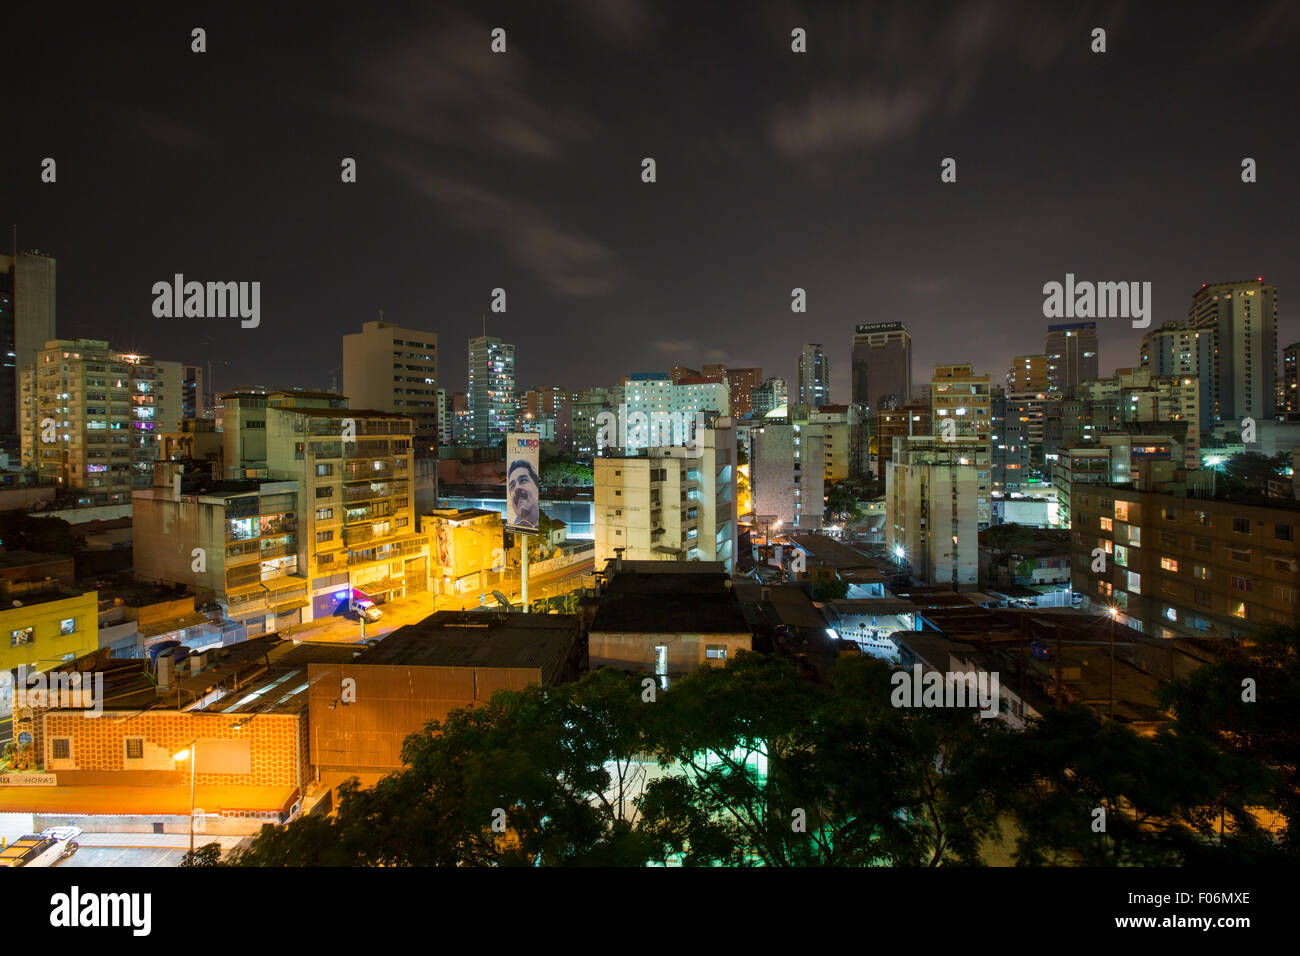 Panoramablick von Caracas, Venezuela, in der Nacht mit einer Plakatwand anzeigen Maduro, der neue Präsident von Venezuela im Jahr 2015. Stockfoto